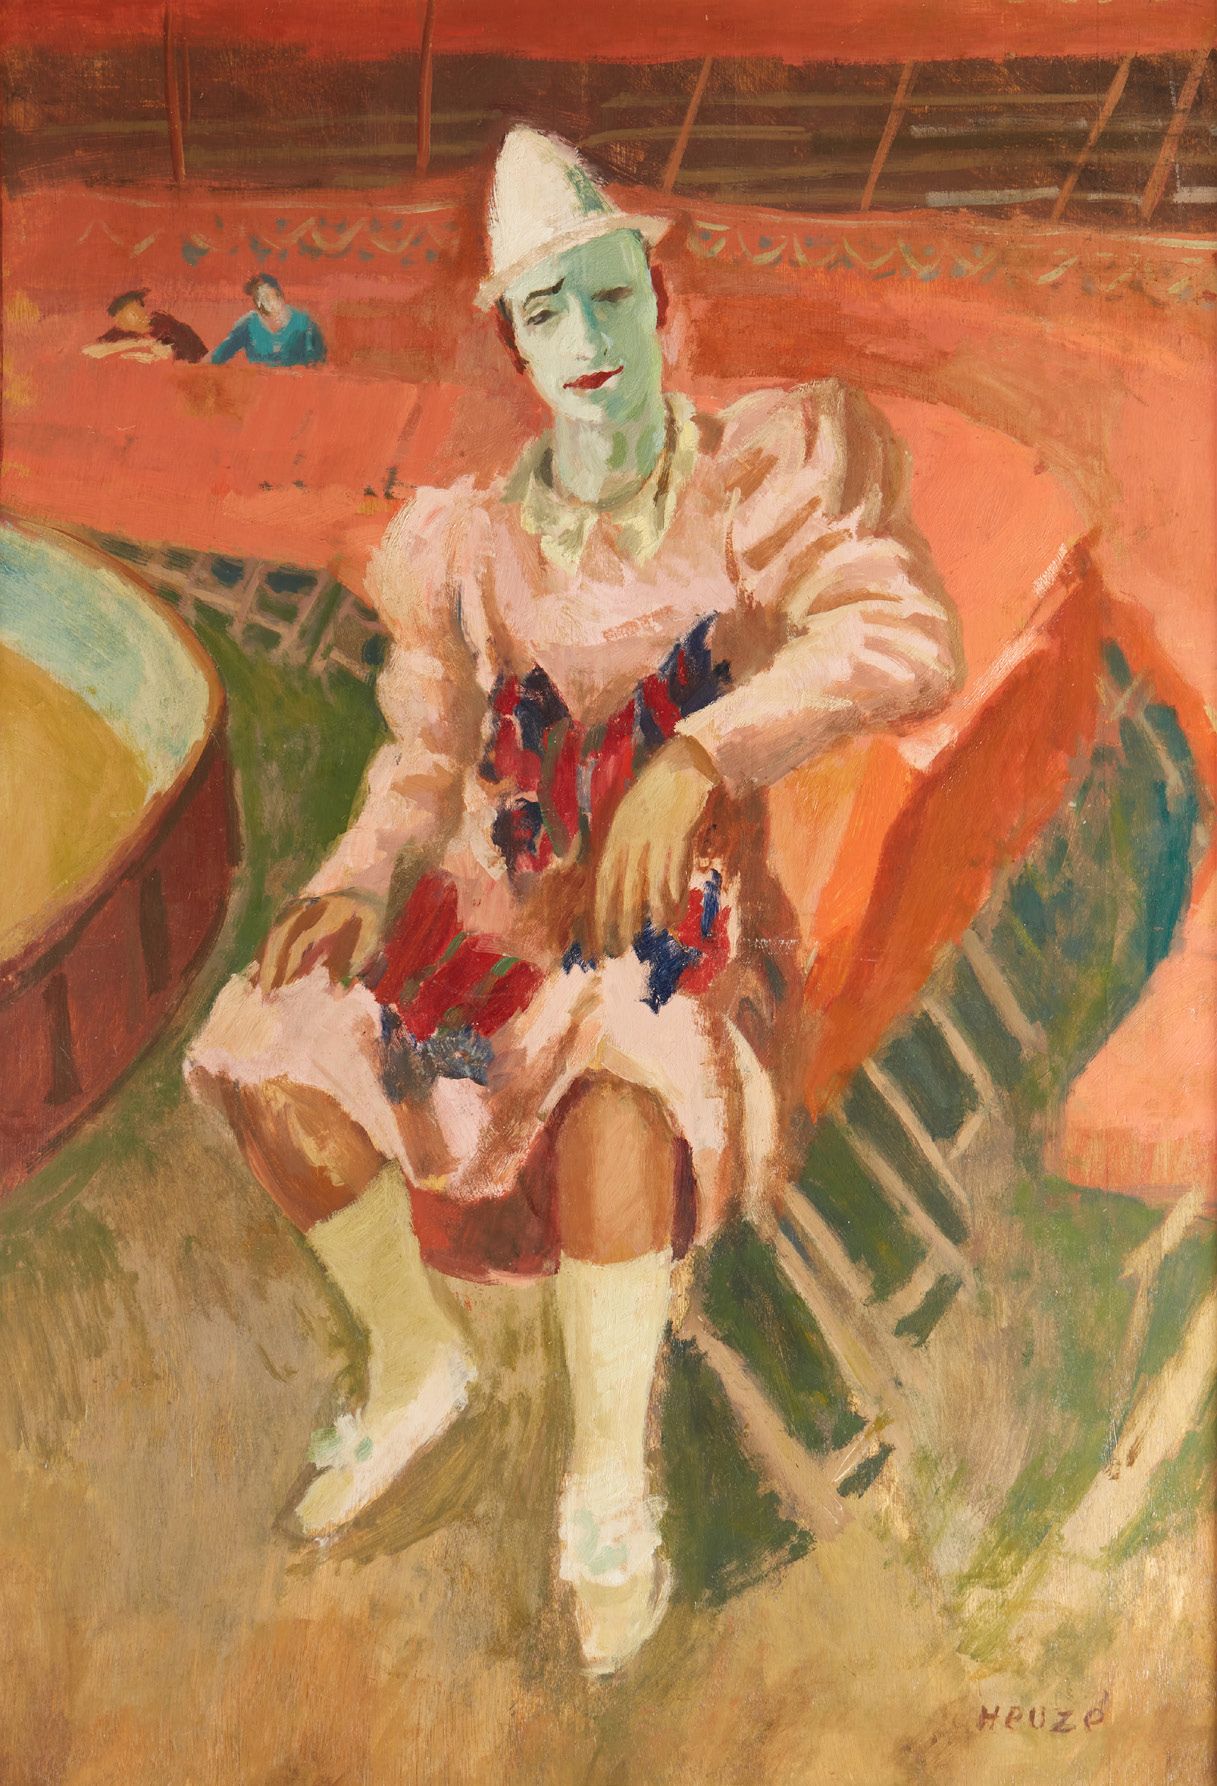 Edmond Amédée HEUZÉ (1884-1967) Clown assis
Huile sur panneau
108 x 77 cm